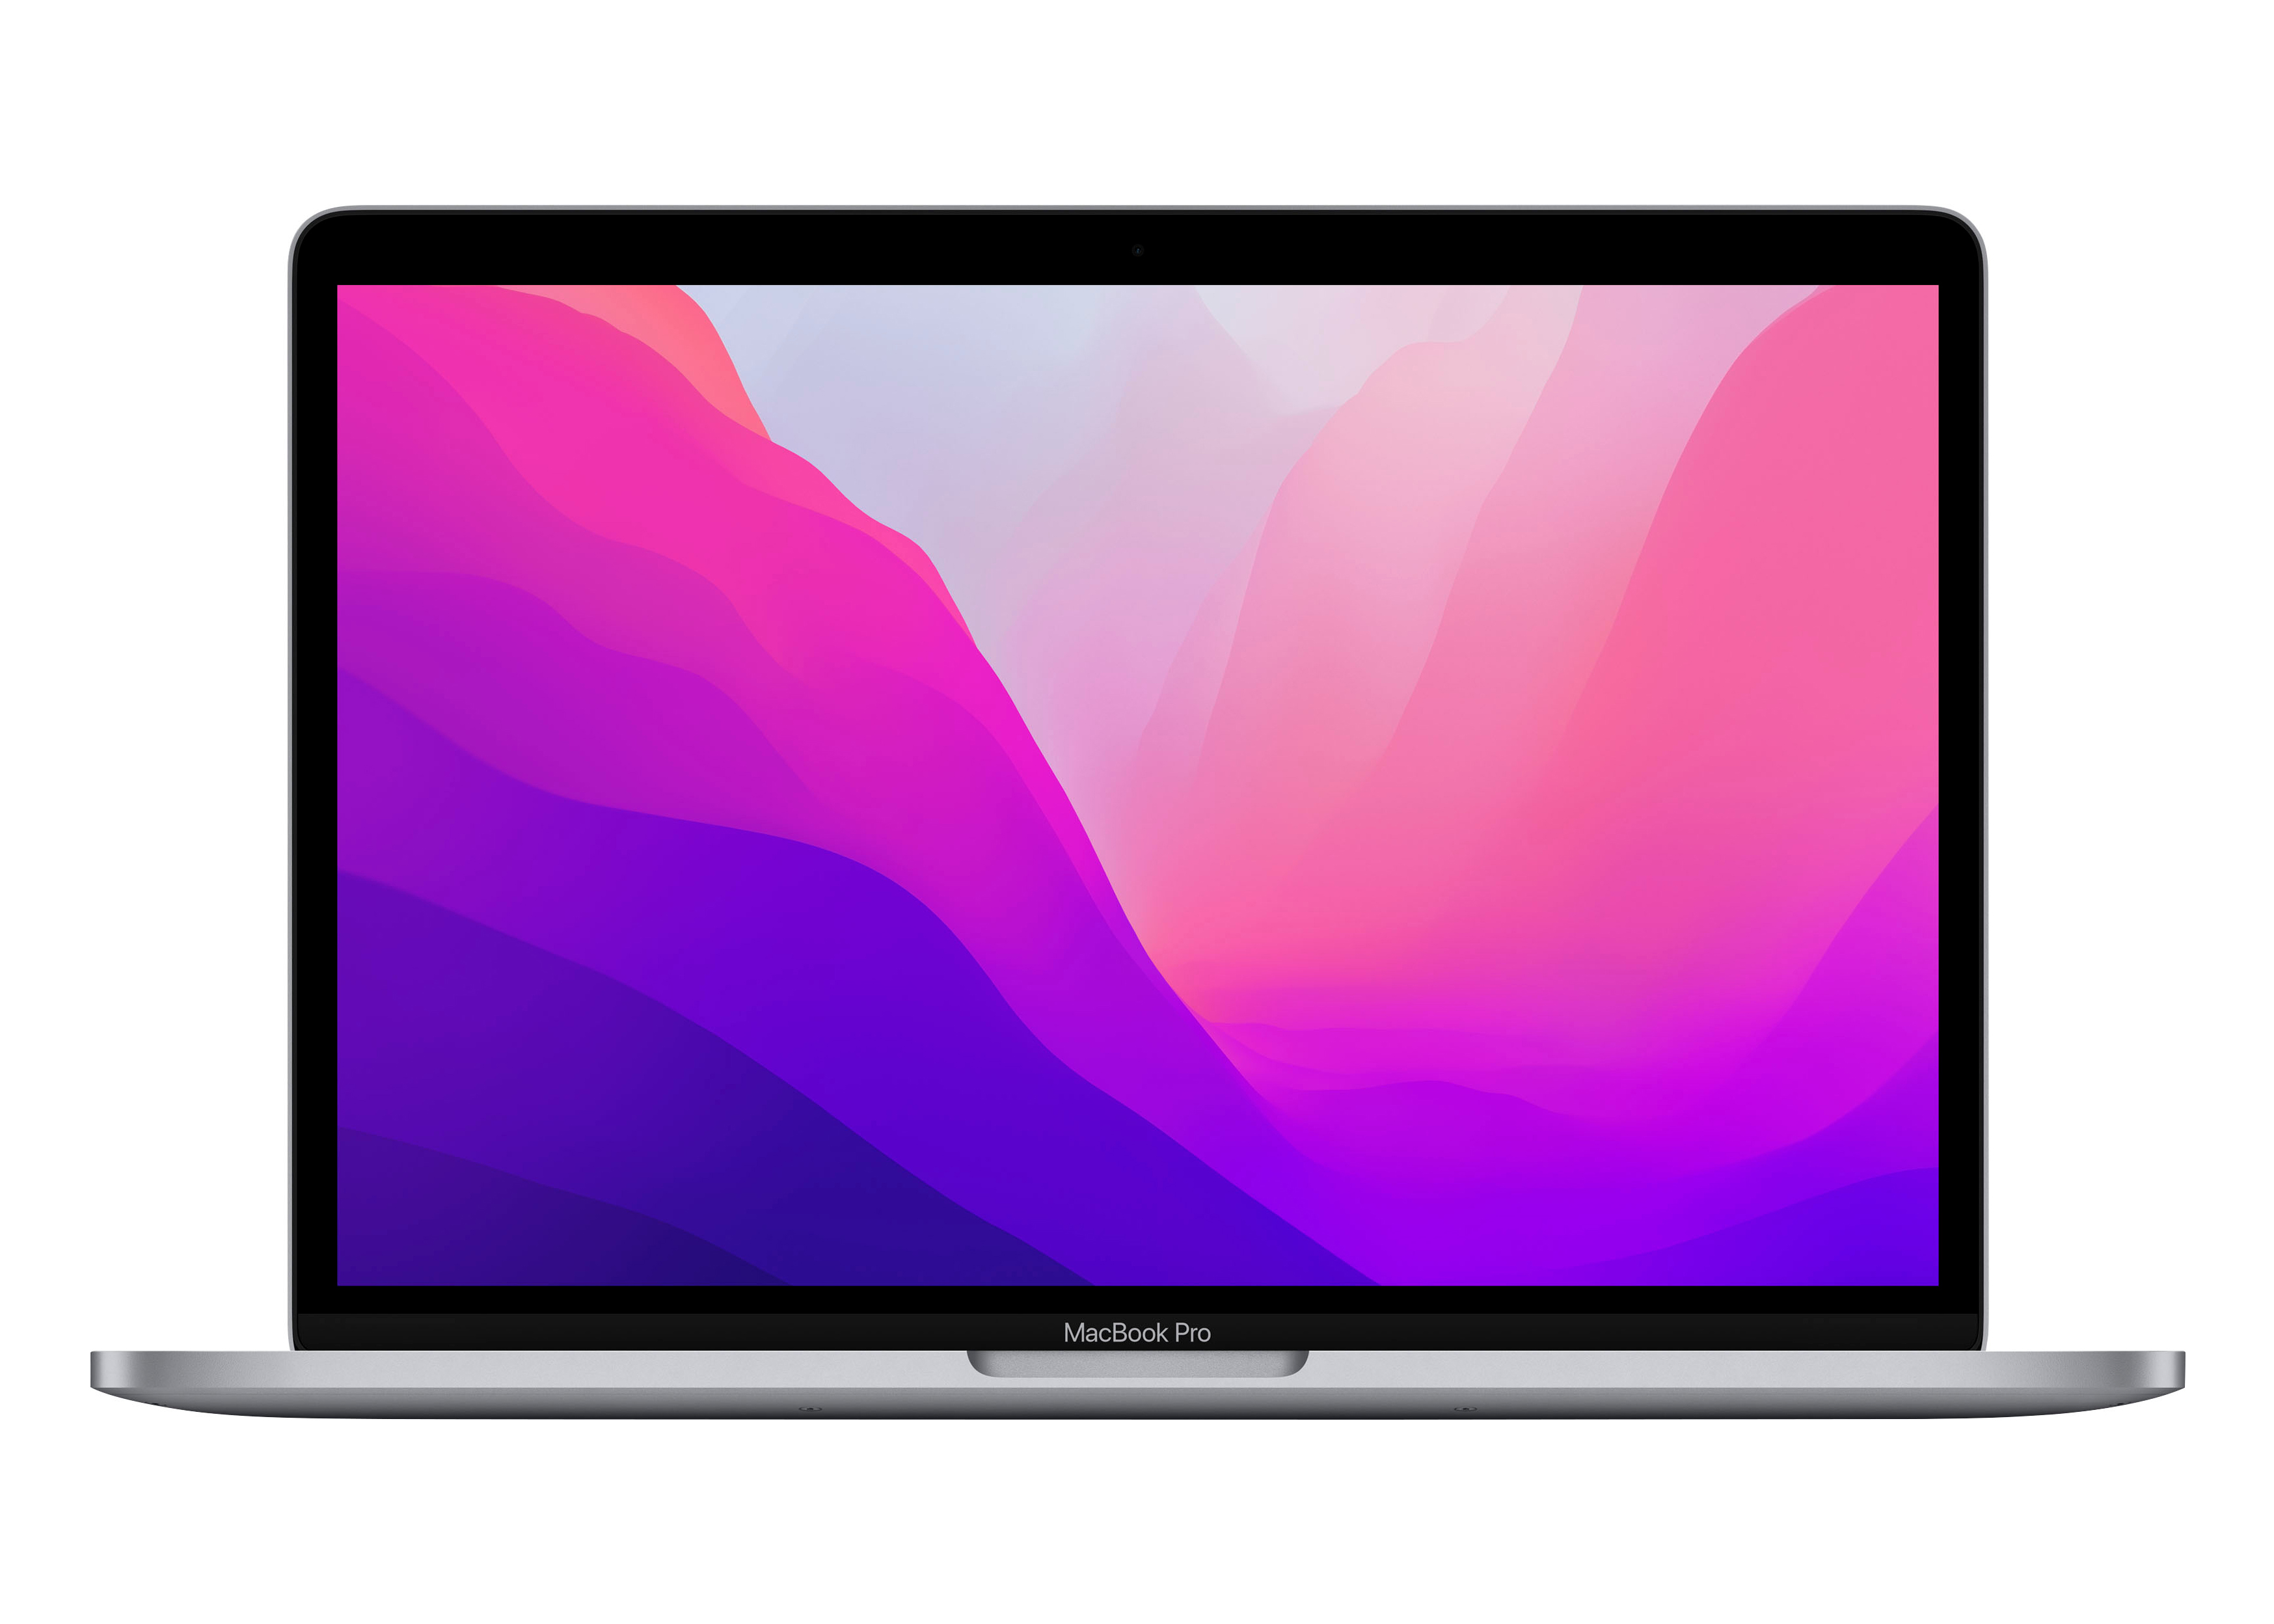 【即日発送可能】【格安】APPLE MacBookPro 13.3インチ